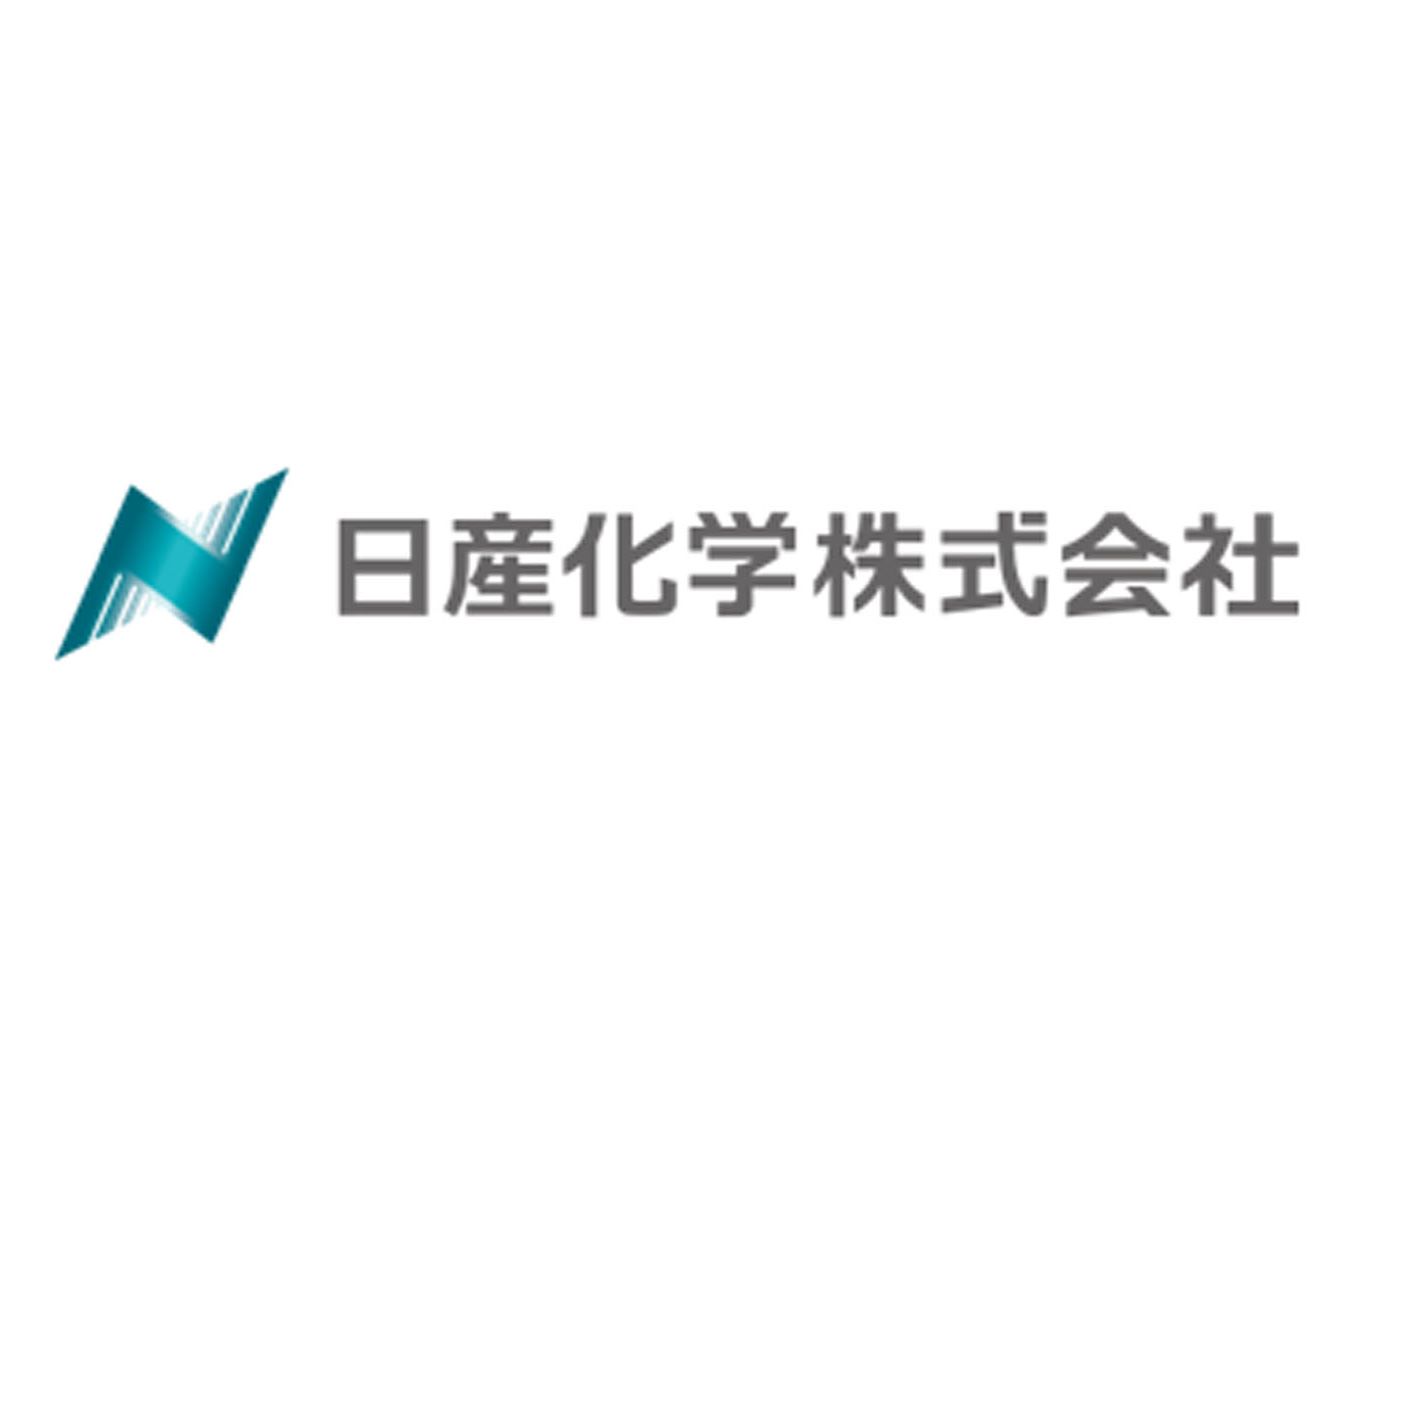 Nissan Chemical Corporation——FCeM